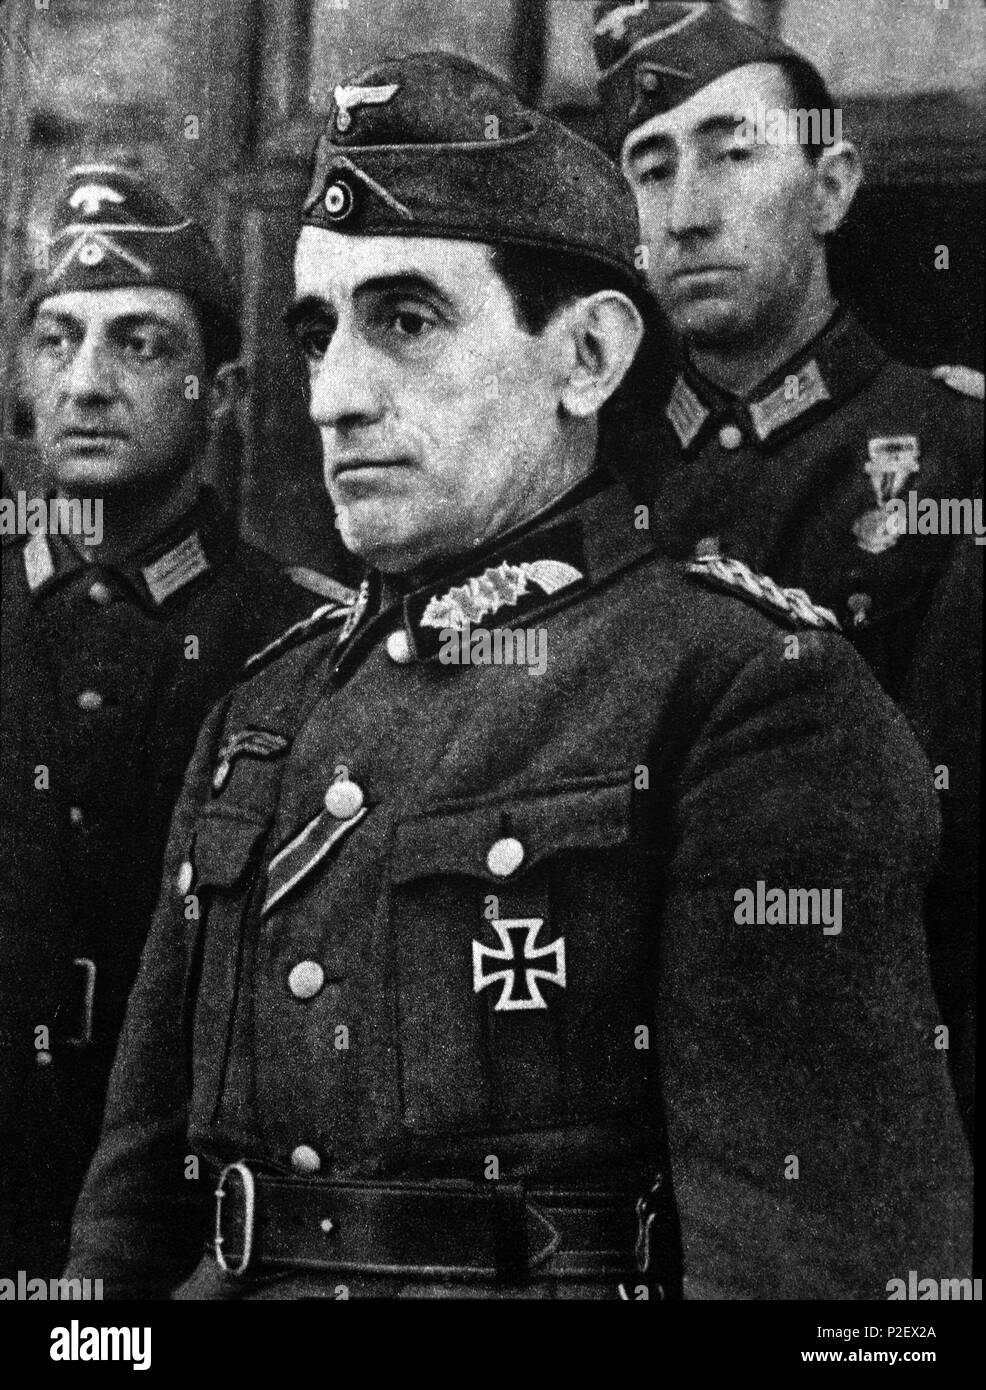 El teniente general Muñoz Grandes, primer comandante de la División Azul, condecorado con la Cruz de Hierro Alemana. Año 1942. Stock Photo